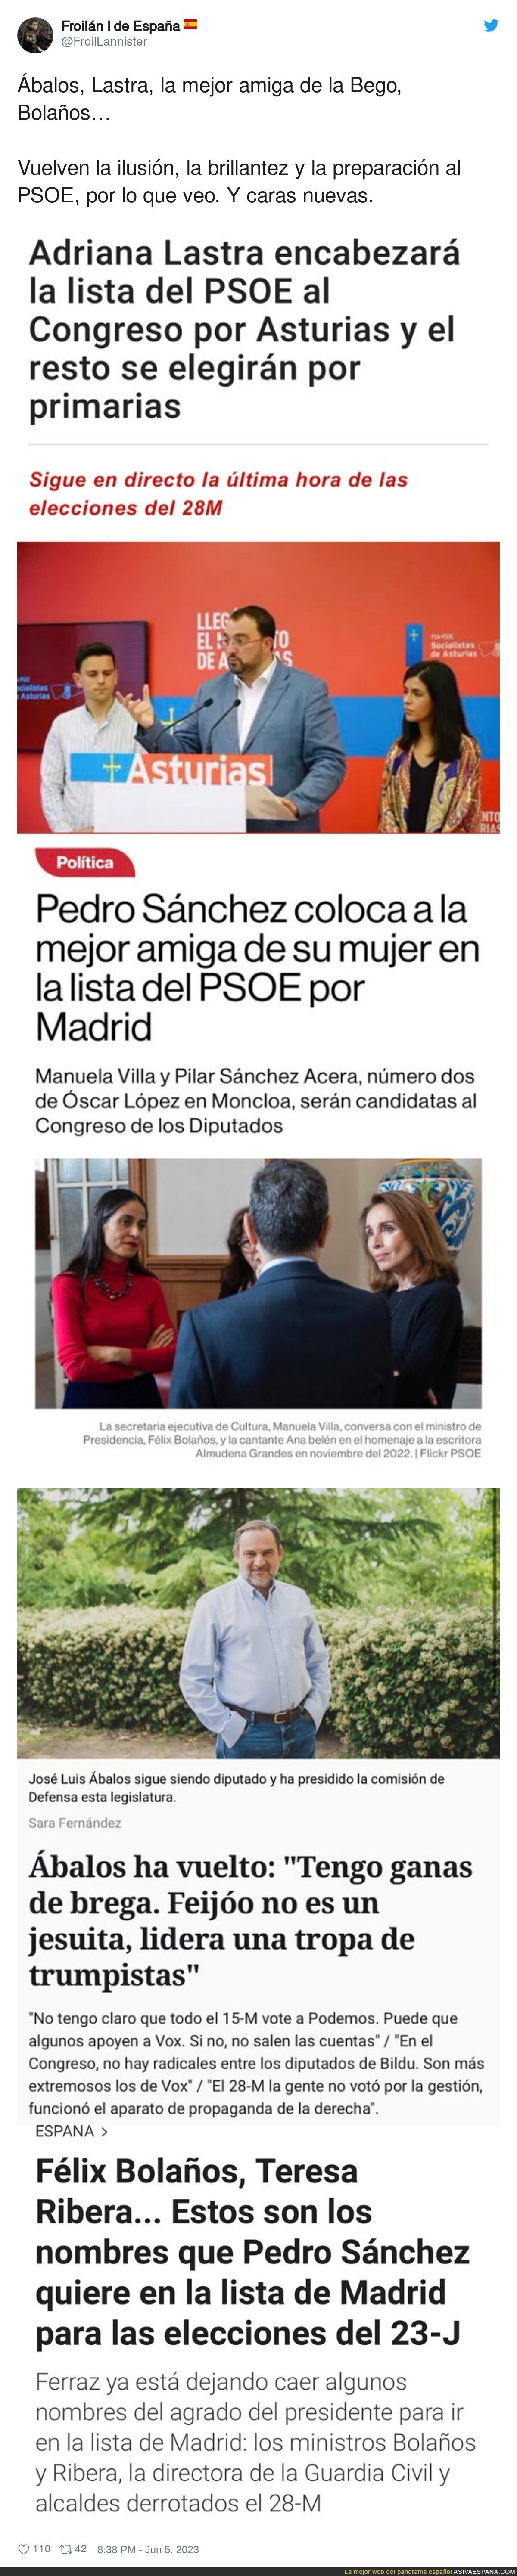 Los palmeros de Pedro Sánchez